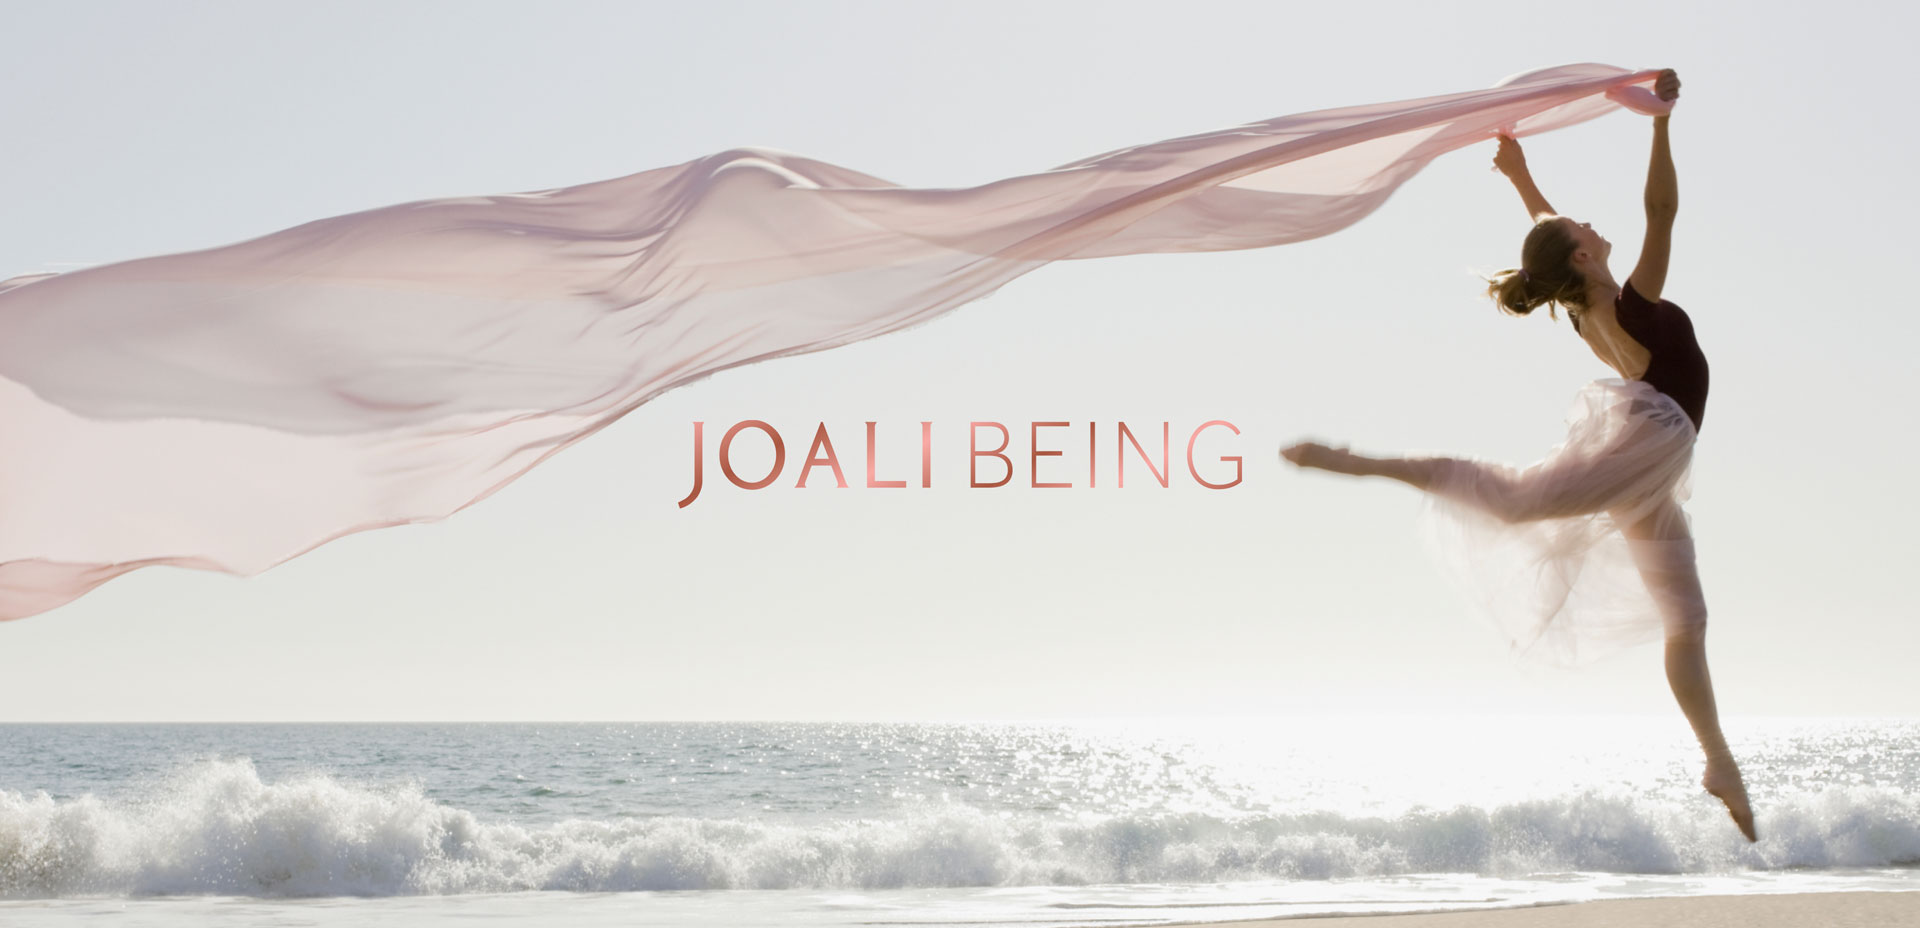 Joali Being